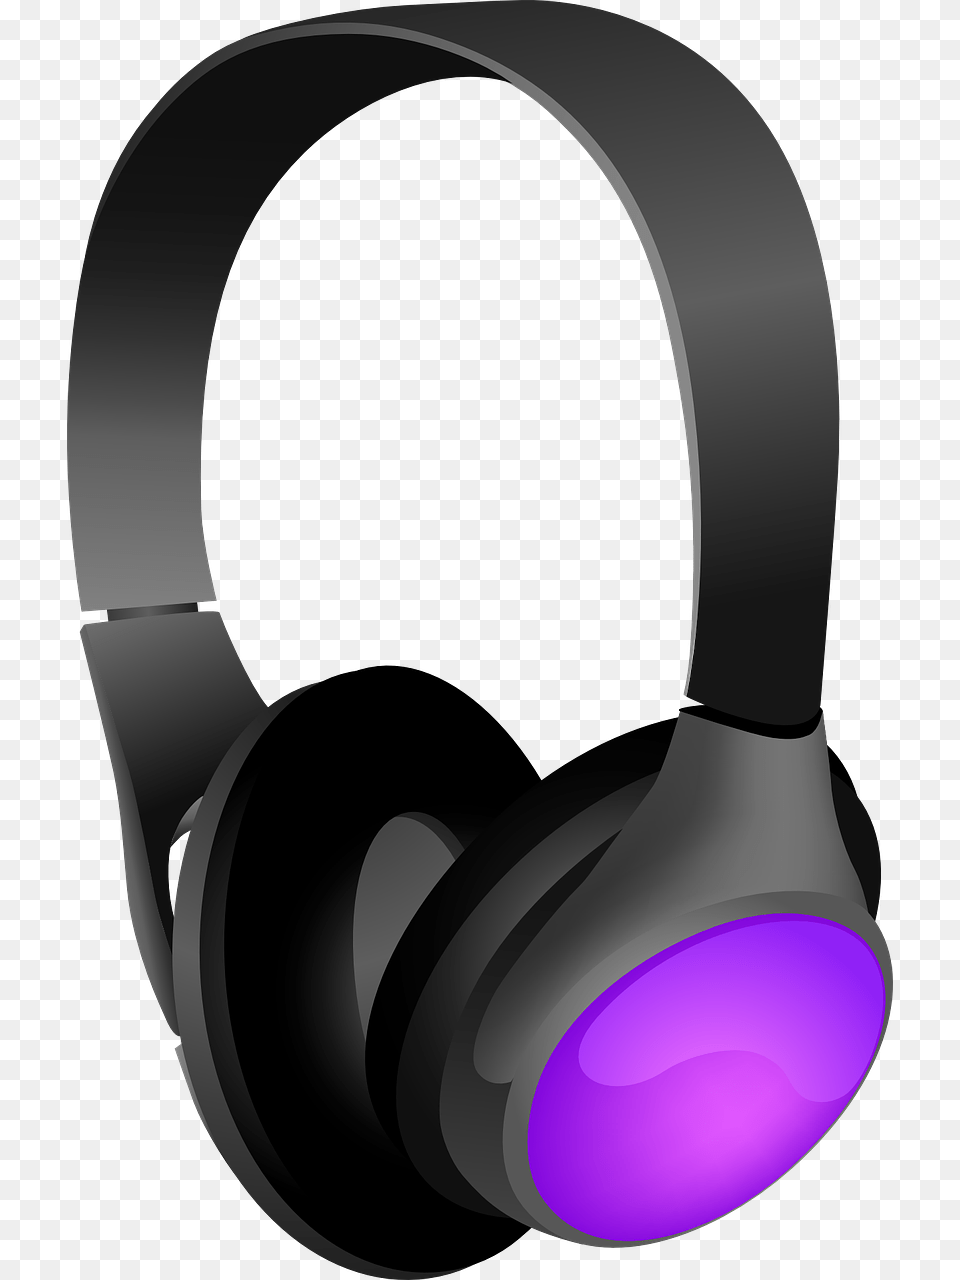 Headphones Clip Art, Electronics Png